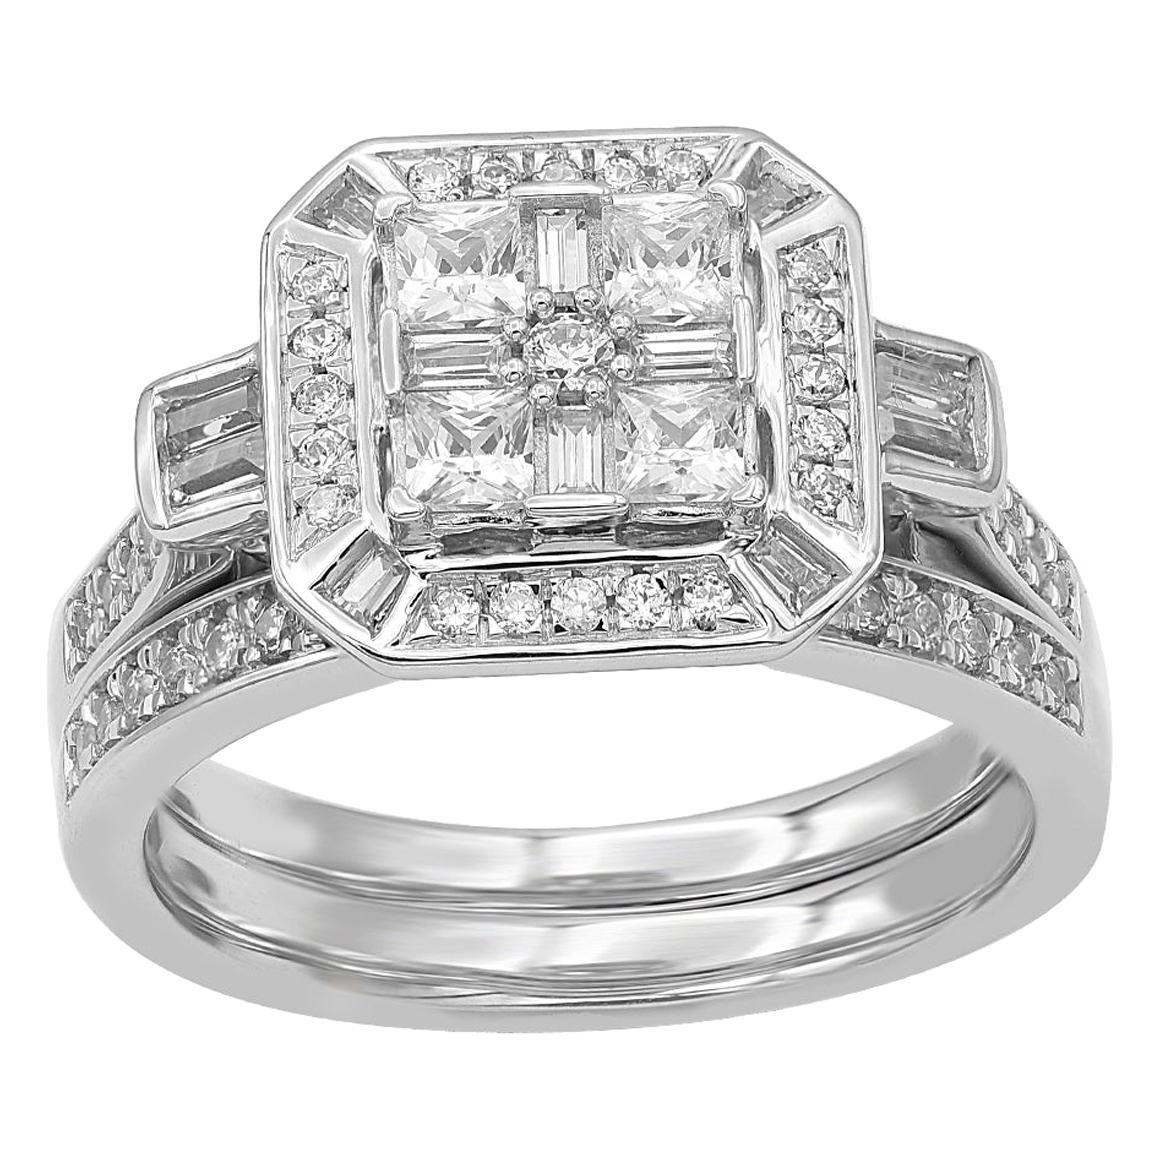 TJD 1.00 Carat Round and Baguette Diamond 14 Karat White Gold Bridal Set Ring